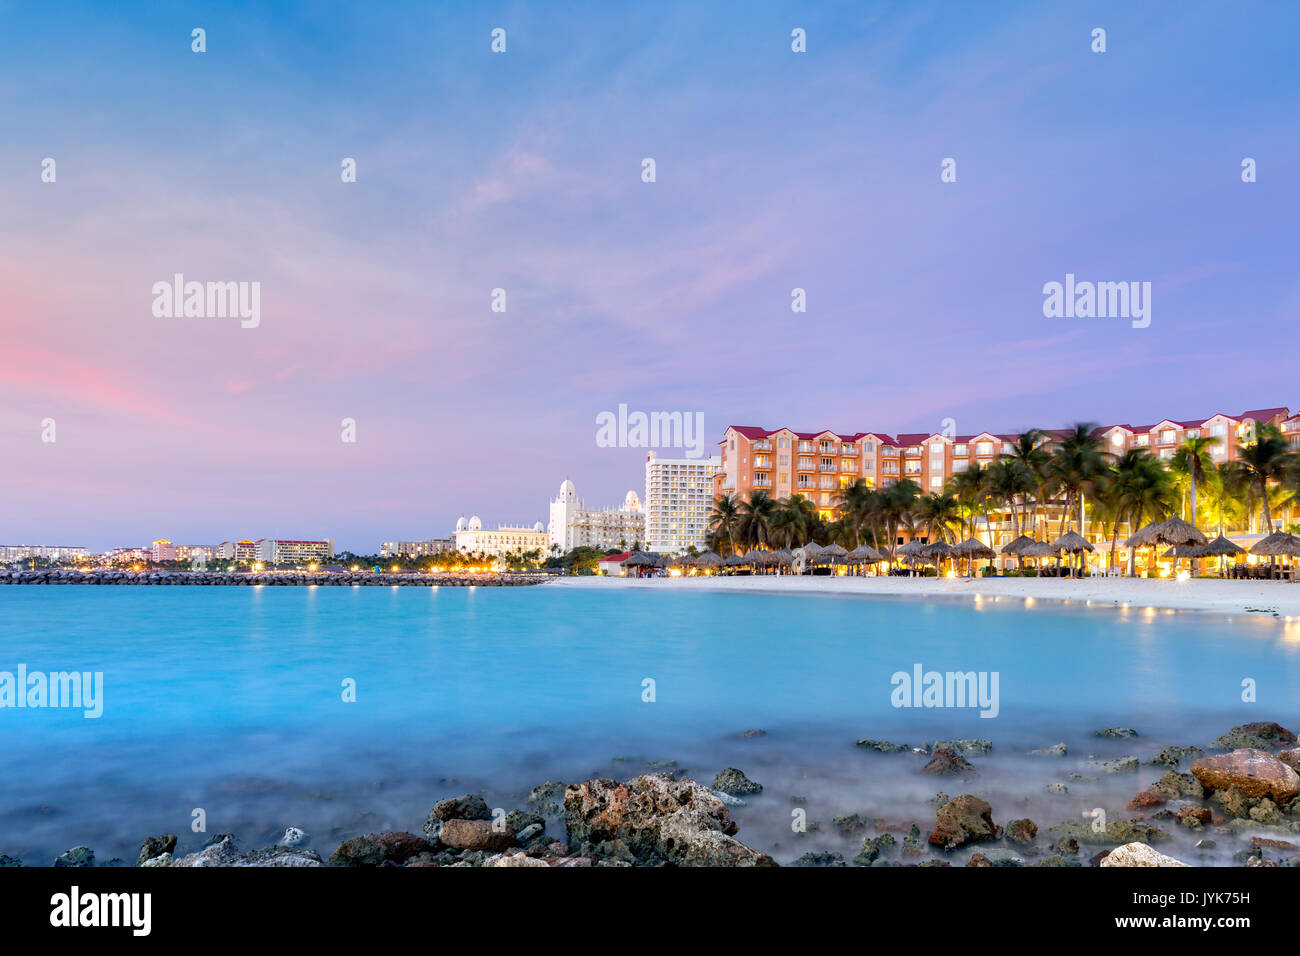 Des tours d'hôtel à Aruba au crépuscule. Palmiers en mouvement suggèrent le venteux, une caractéristique bien connue de cette île, située sur le sout Banque D'Images